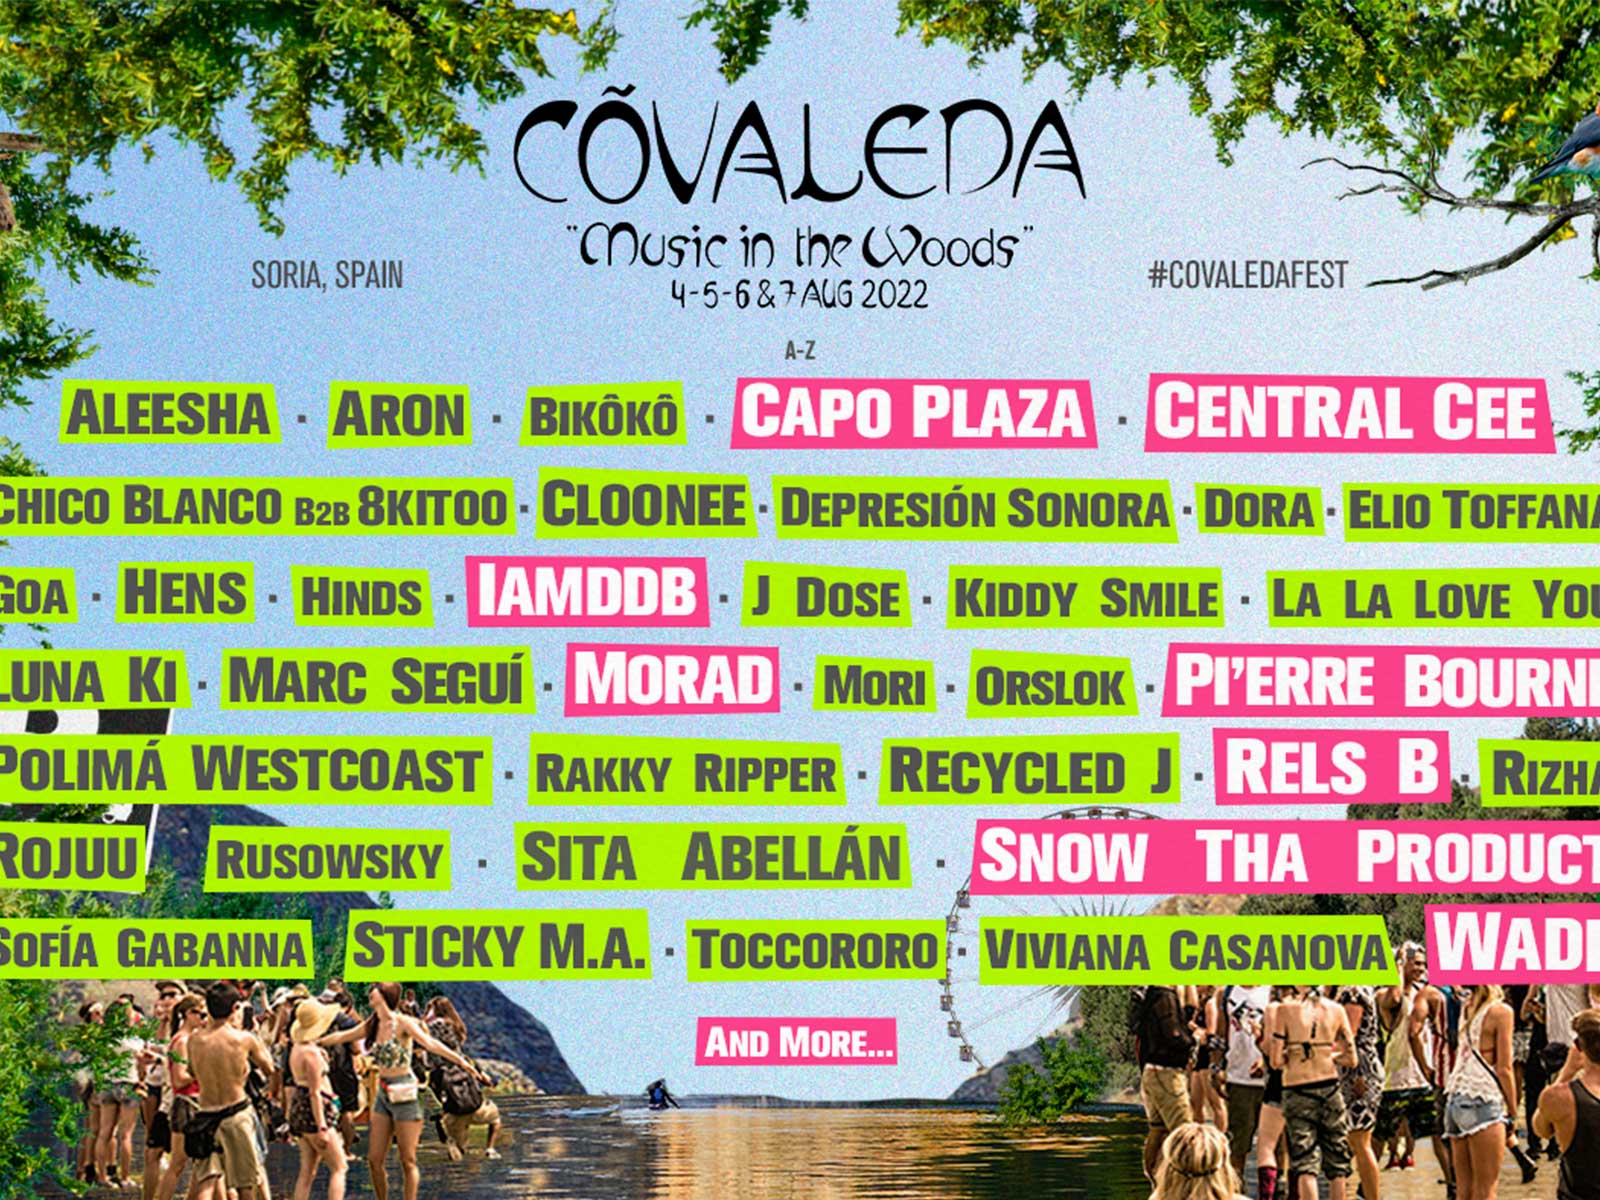 Road to the Woods: Calentando motores para el Covaleda Fest